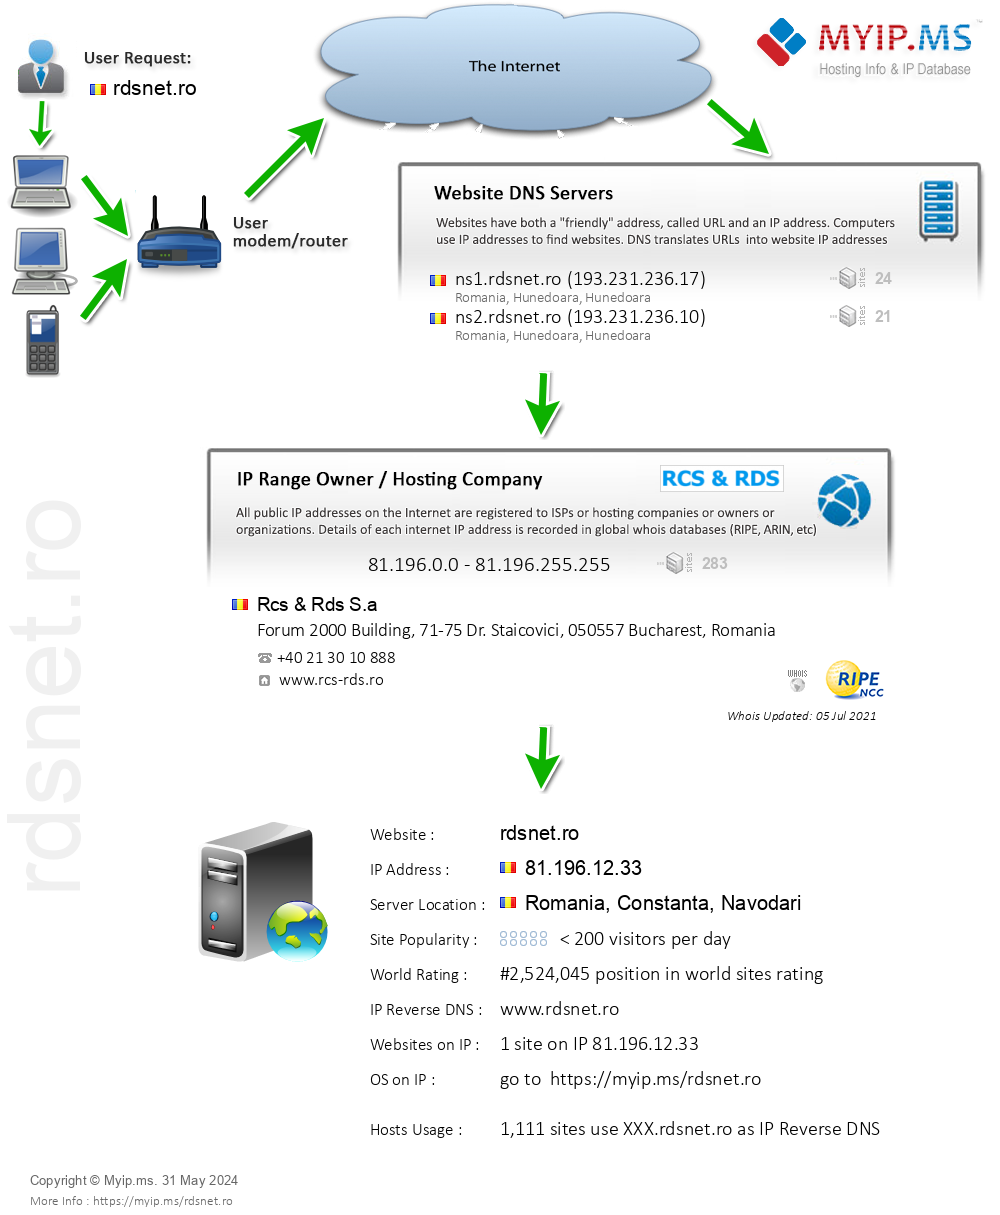 Rdsnet.ro - Website Hosting Visual IP Diagram